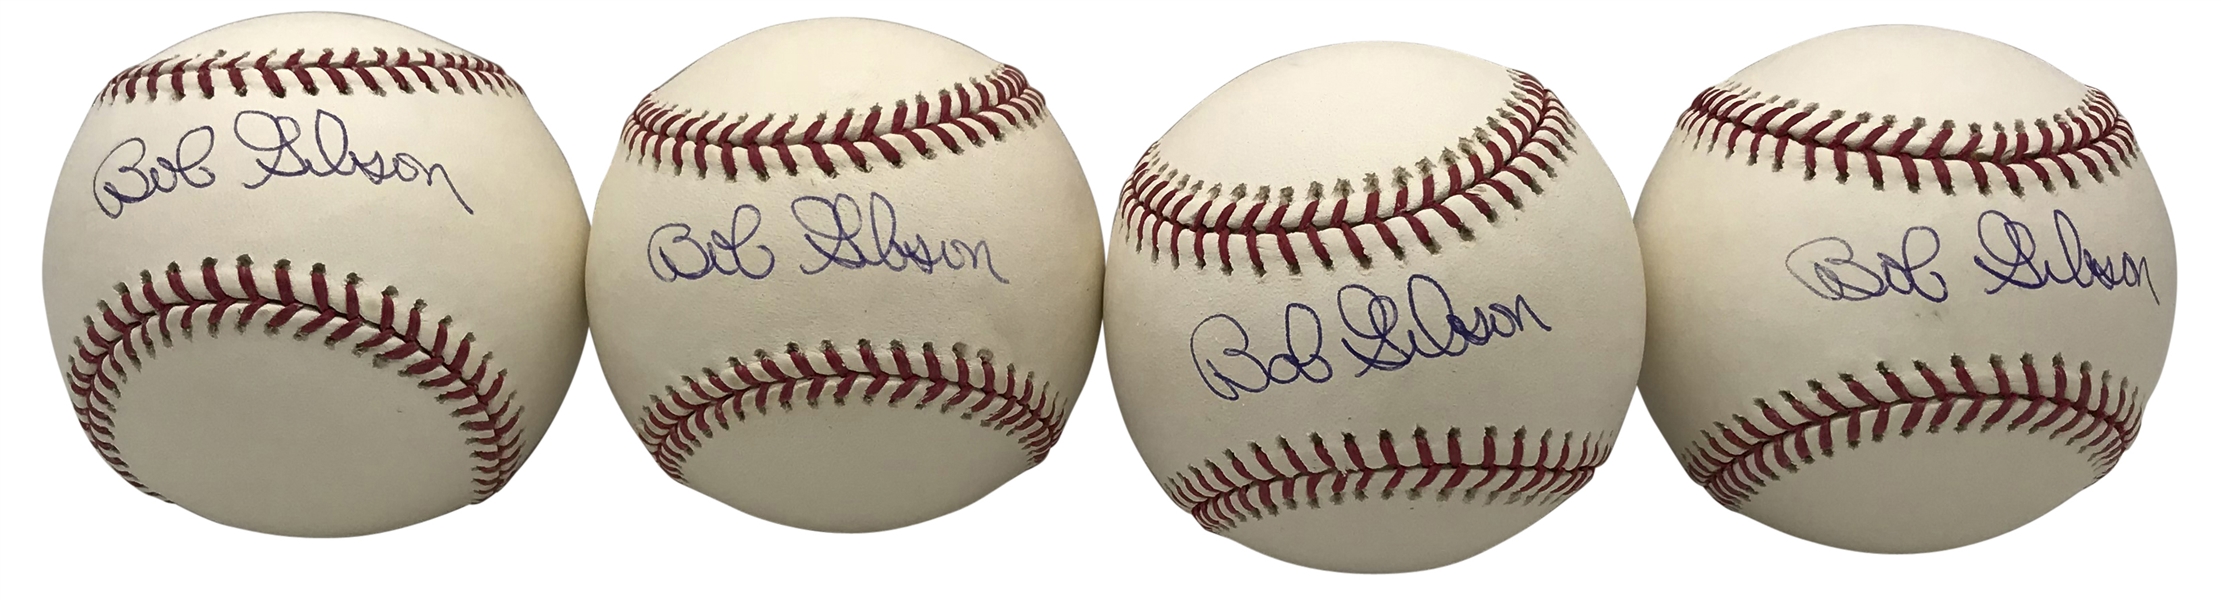 Bob Gibson Lot of Four (4) Signed OML Baseballs (PSA/DNA)